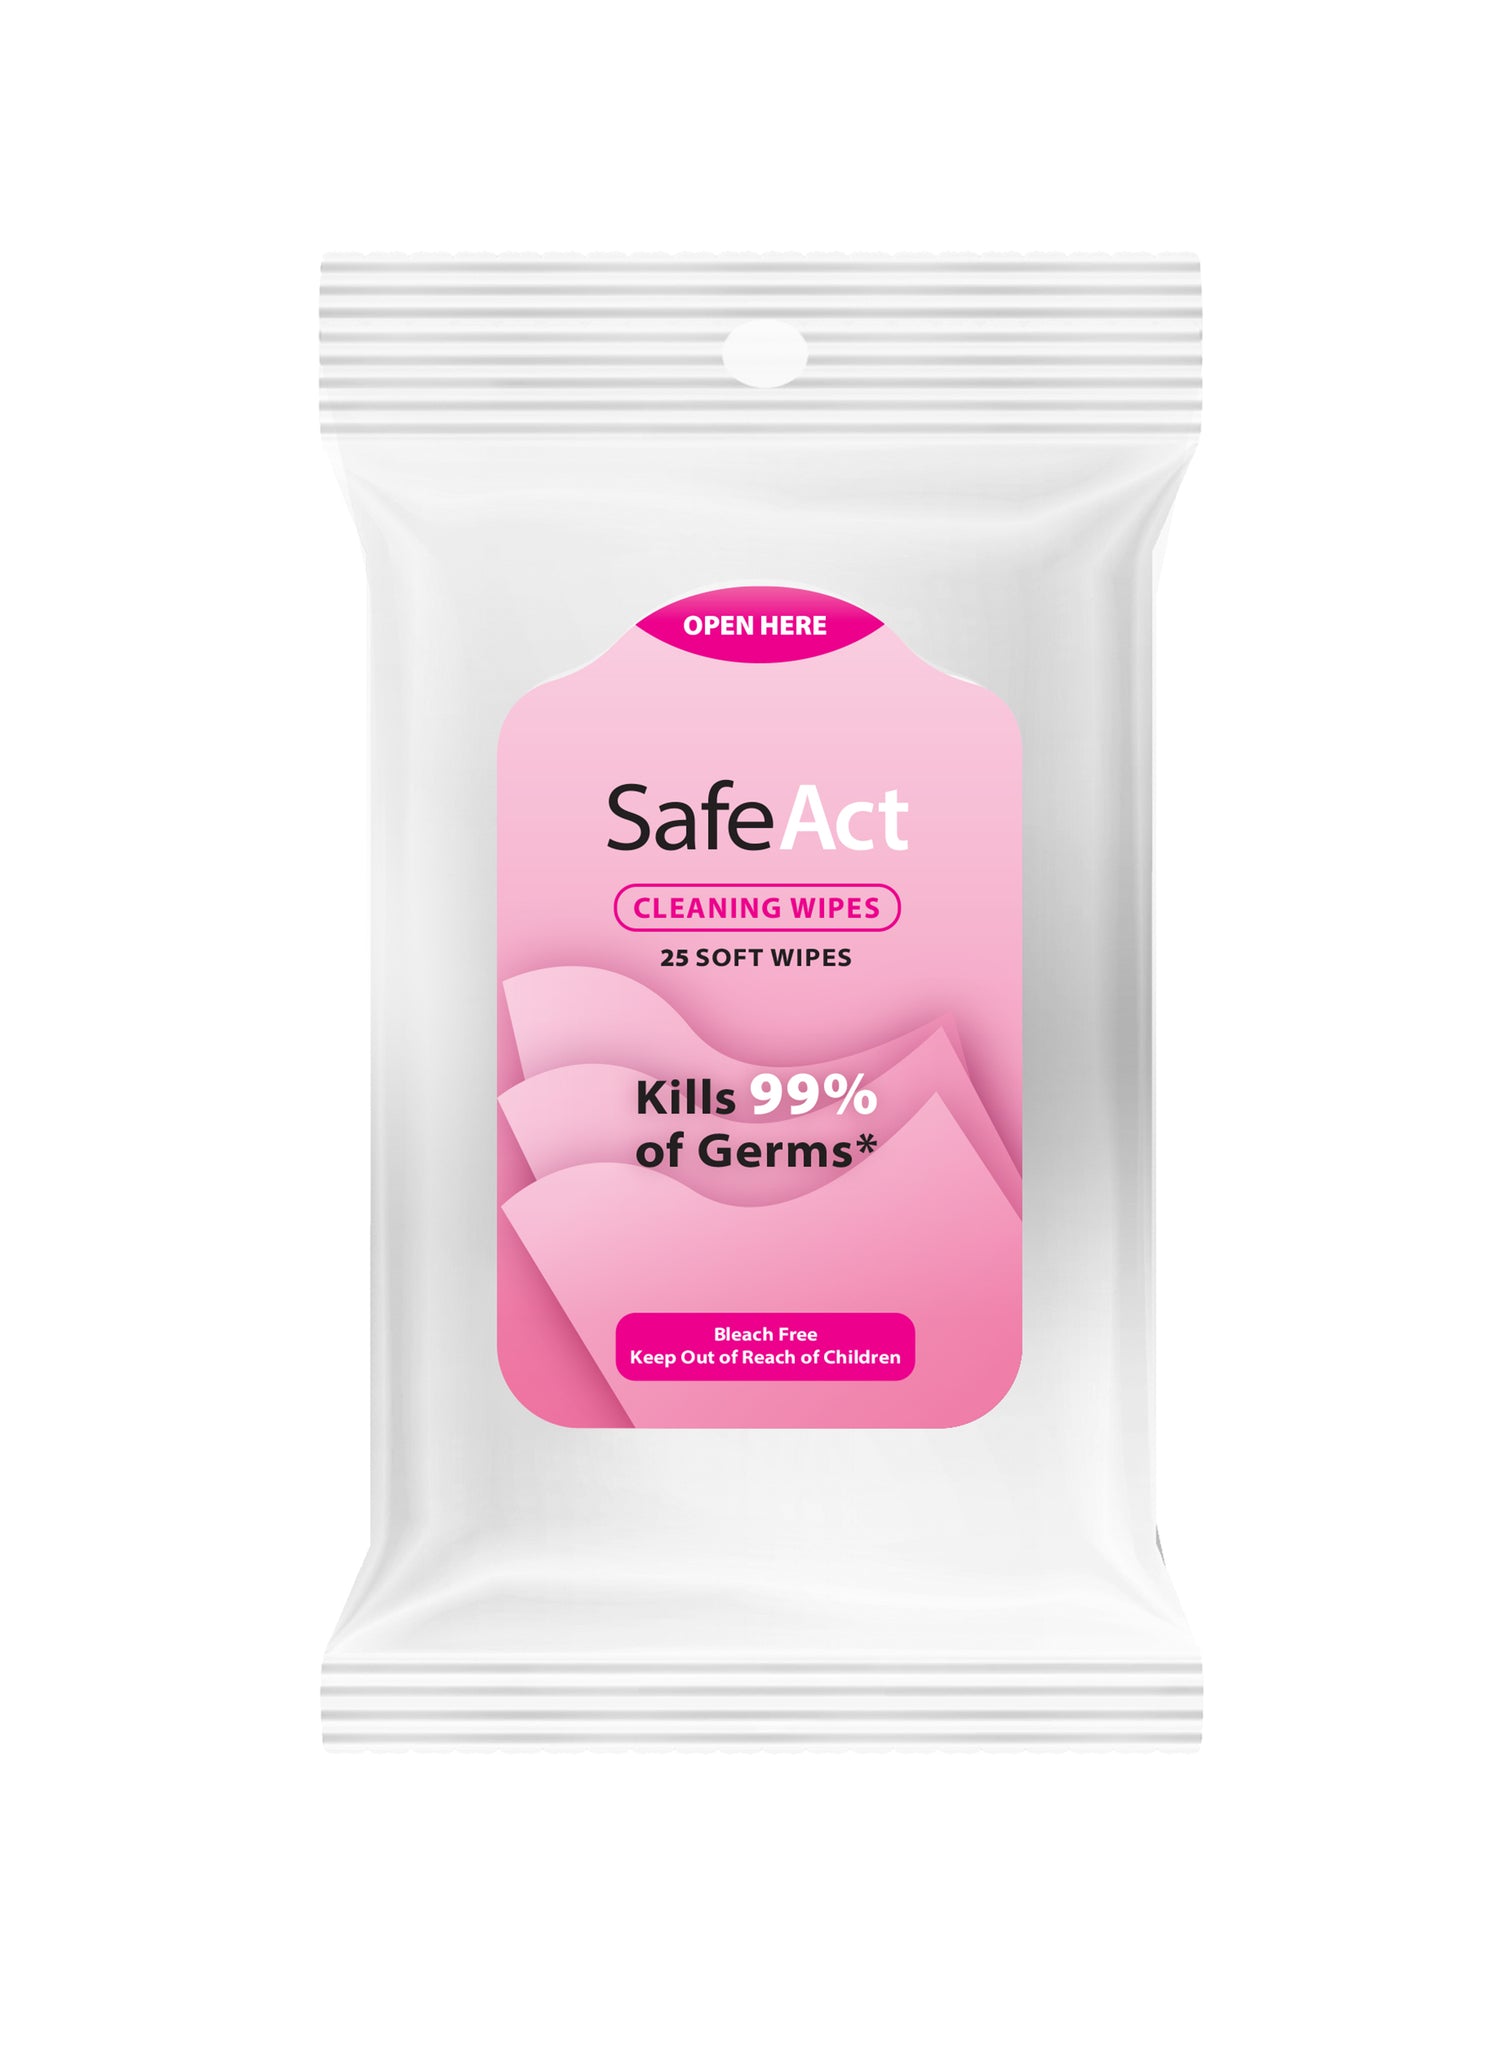 SafeAct Kit For Girls 90 Pack